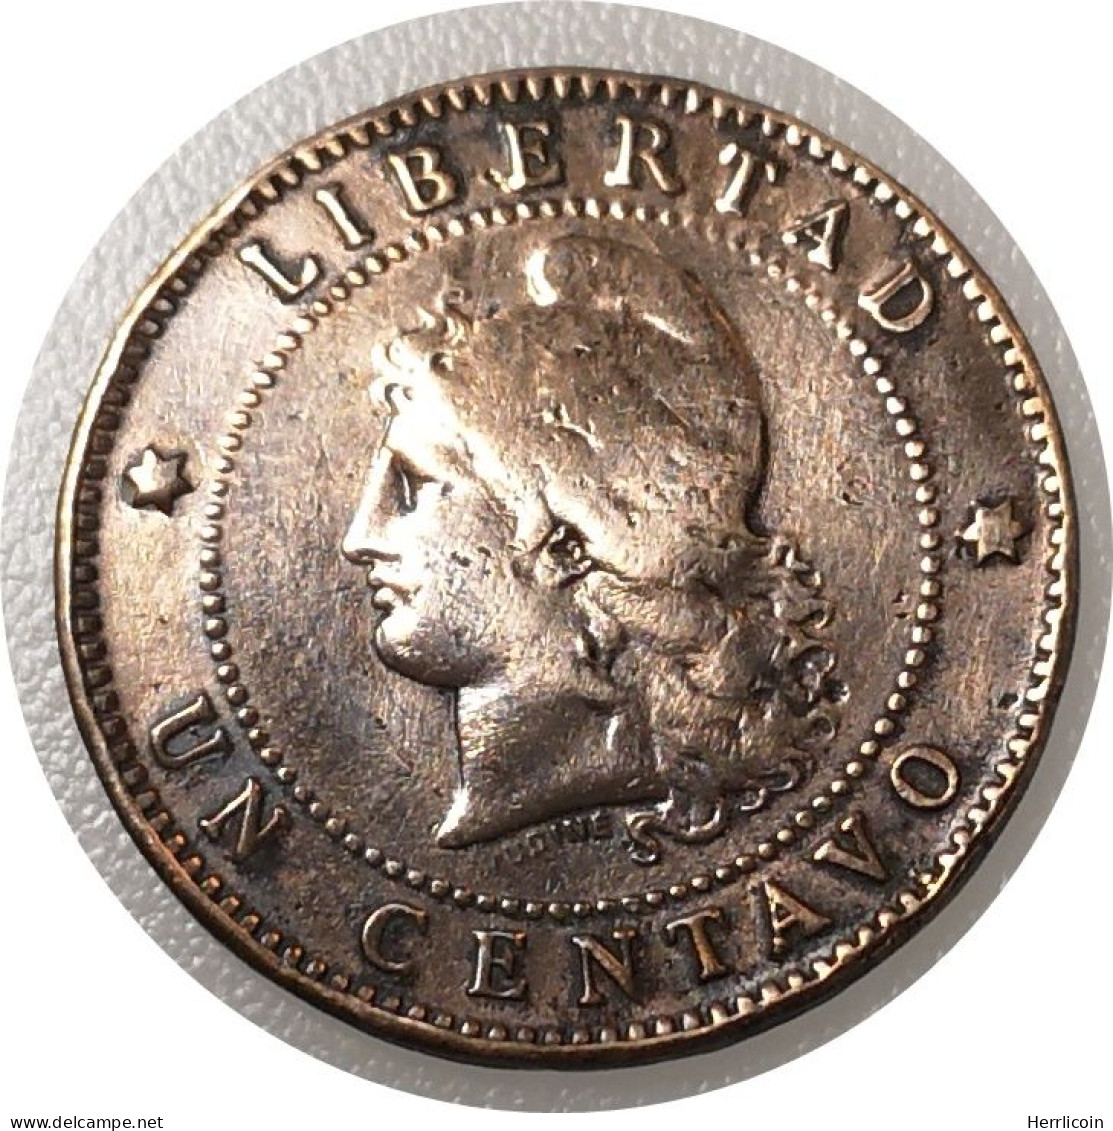 Monnaie Argentine - 1890 - 1 Centavo - Argentina